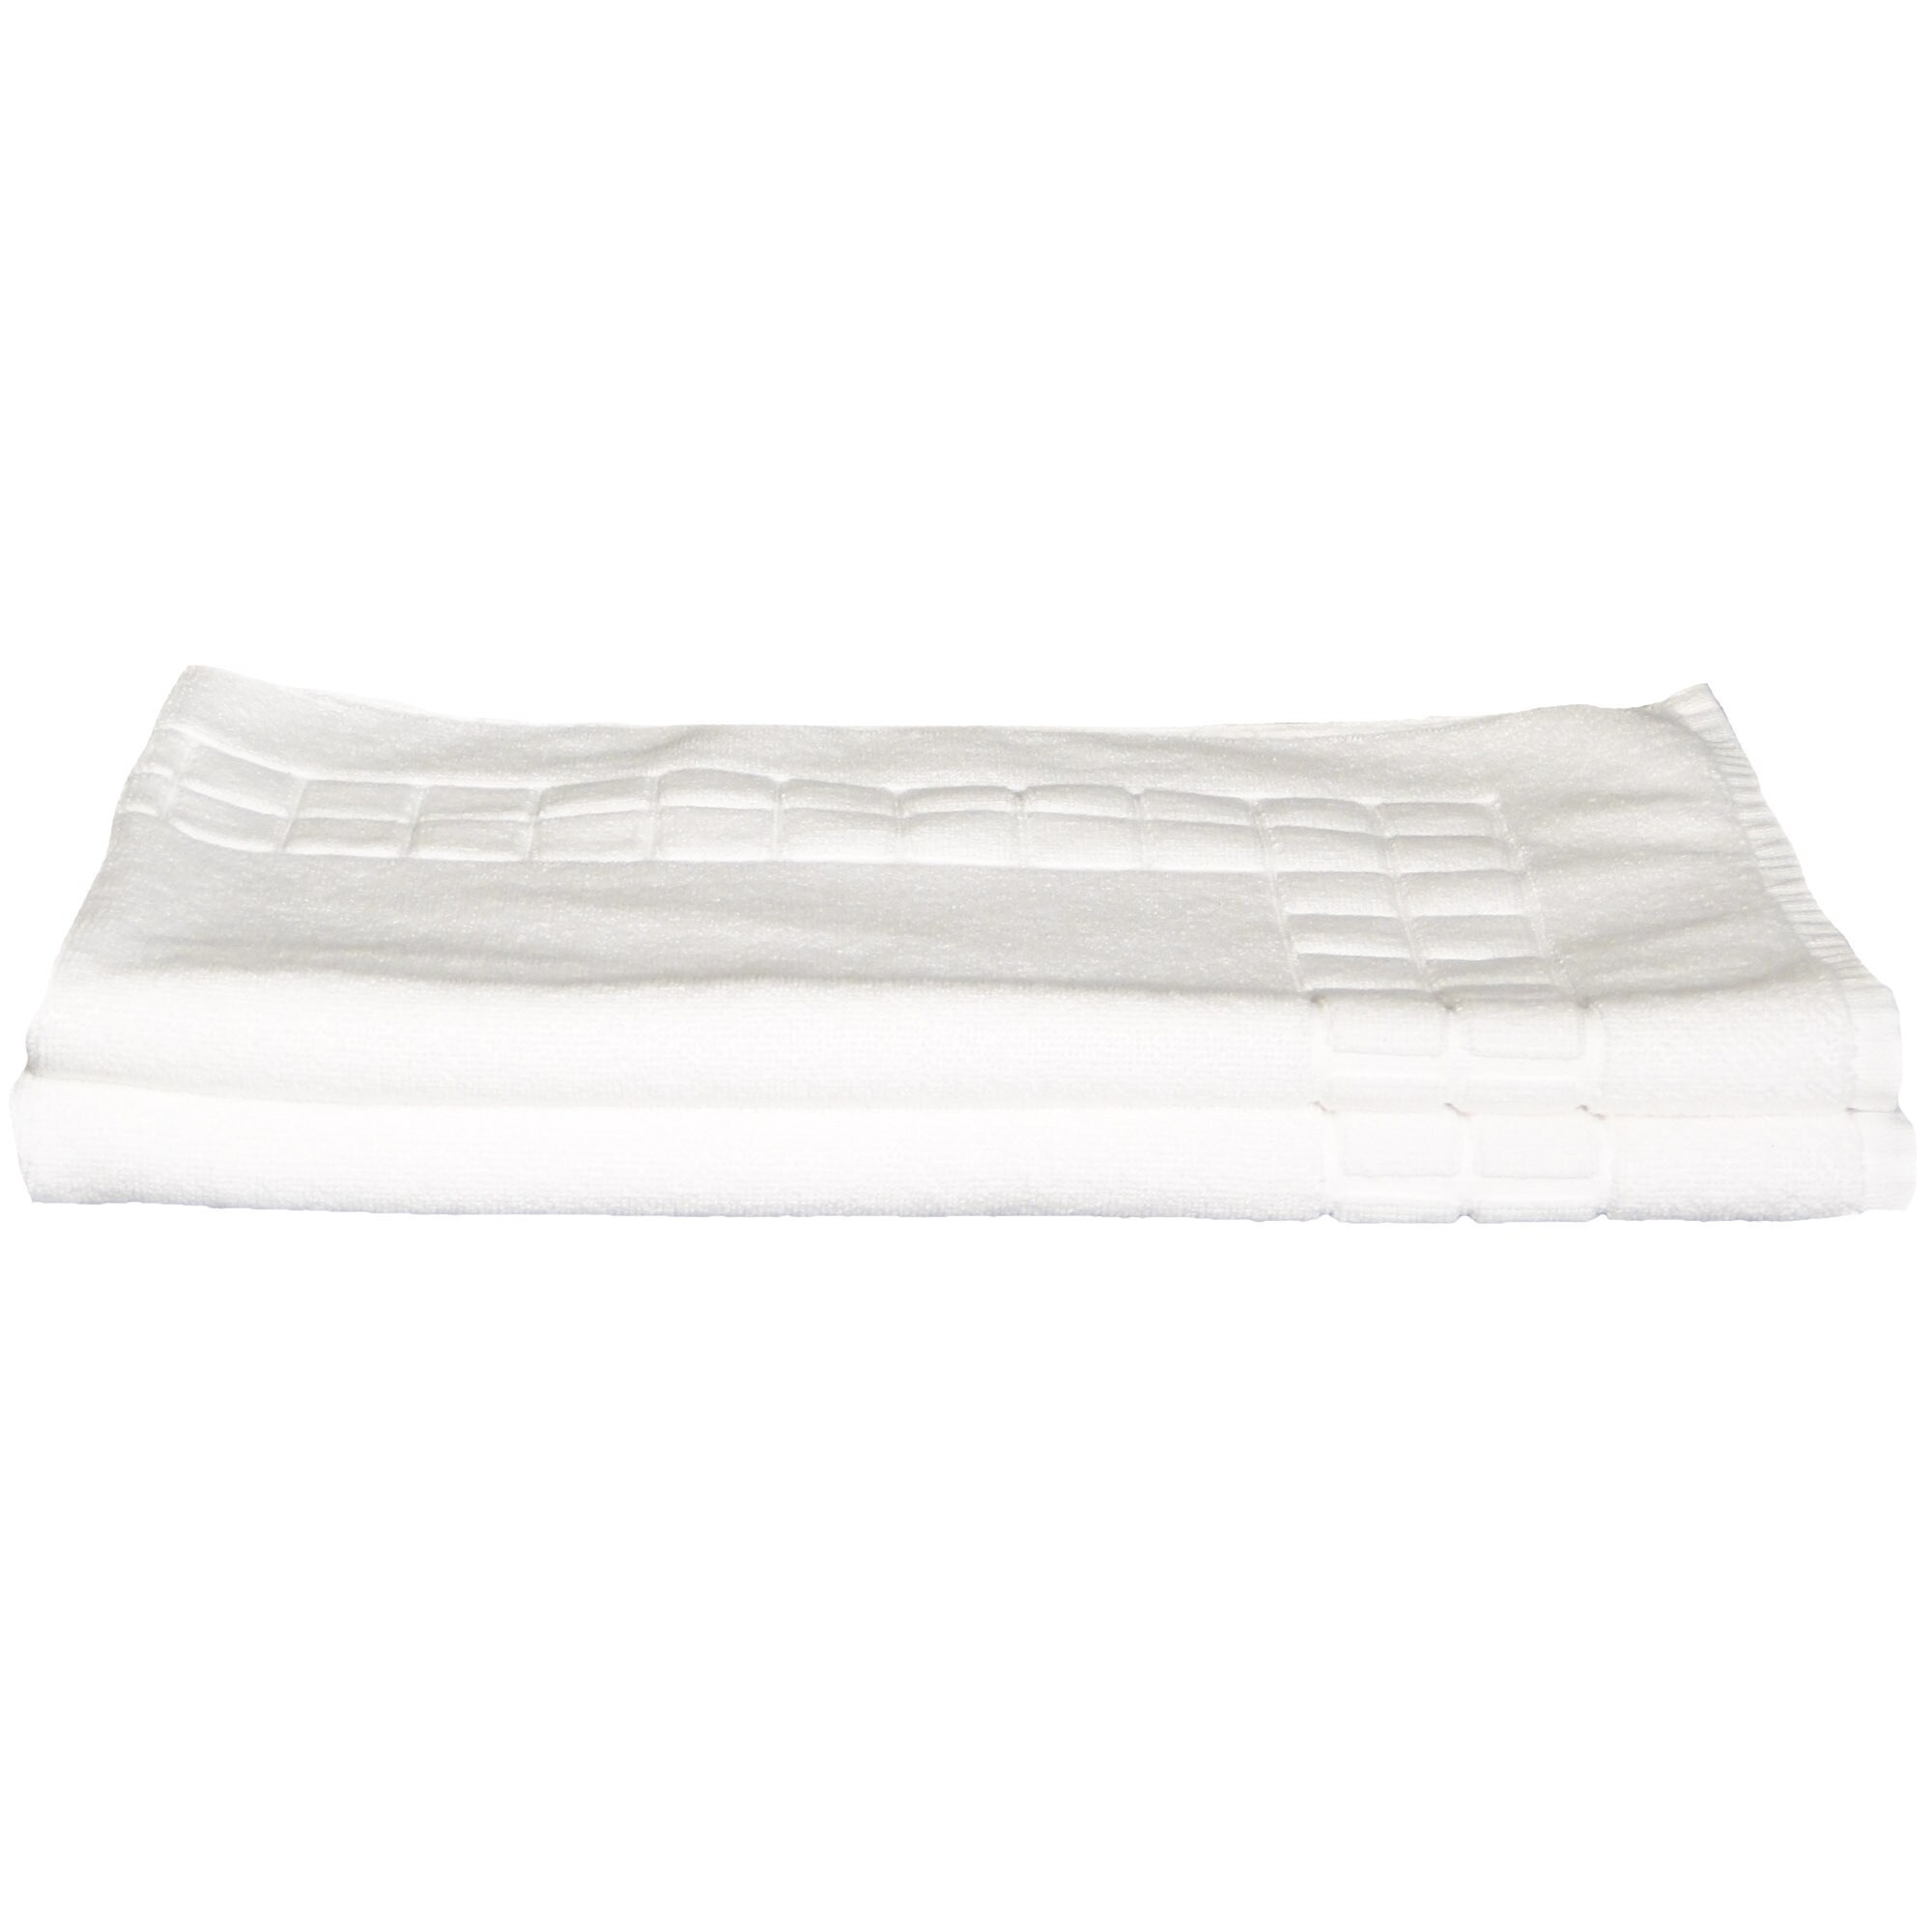 Chelsea Six Piece Bath Towel Set, Two Each - Washcloths, Hand